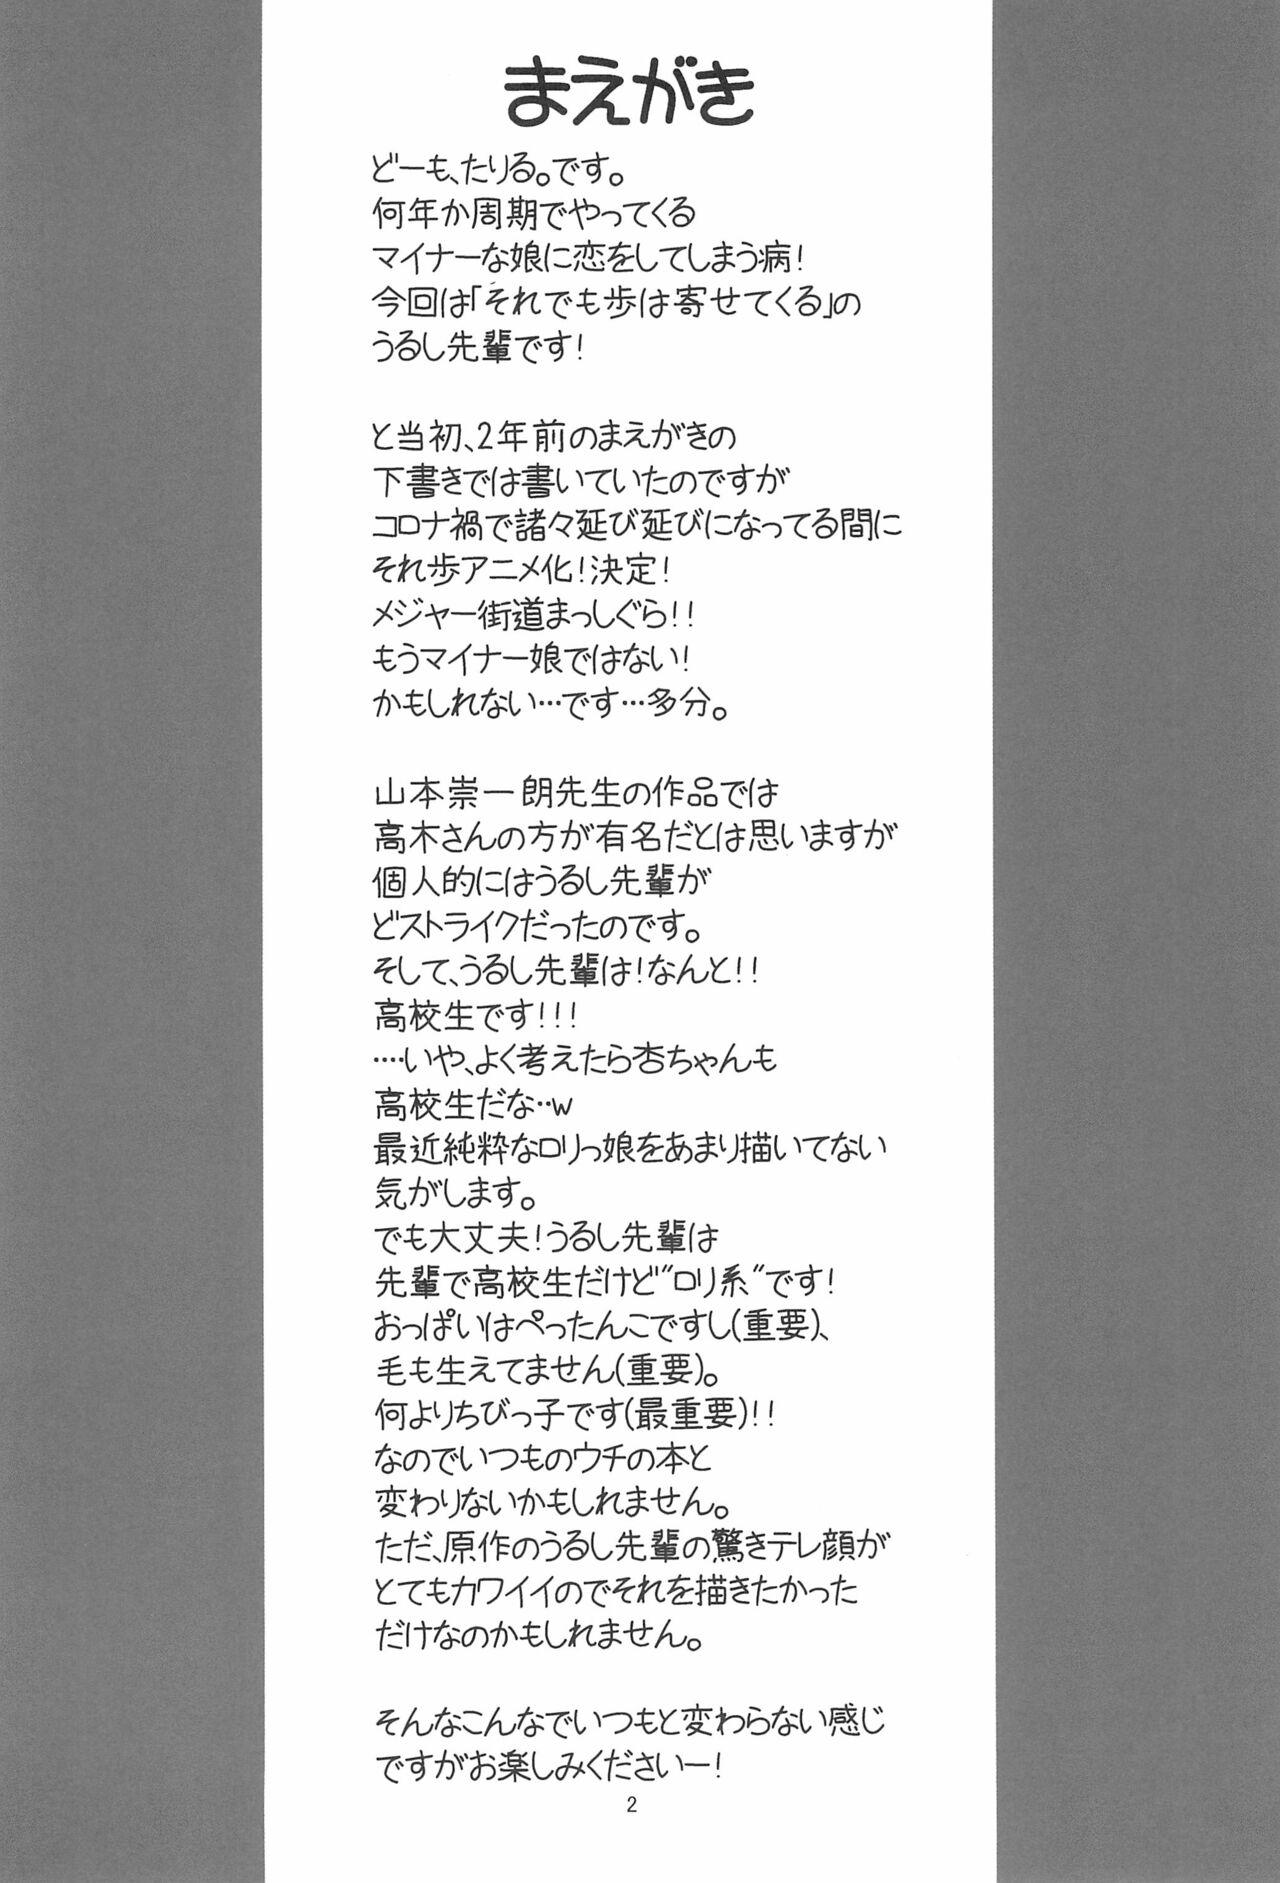 Tribbing Hinnyuu Musume 40 - Soredemo ayumu wa yosetekuru Spy - Page 4